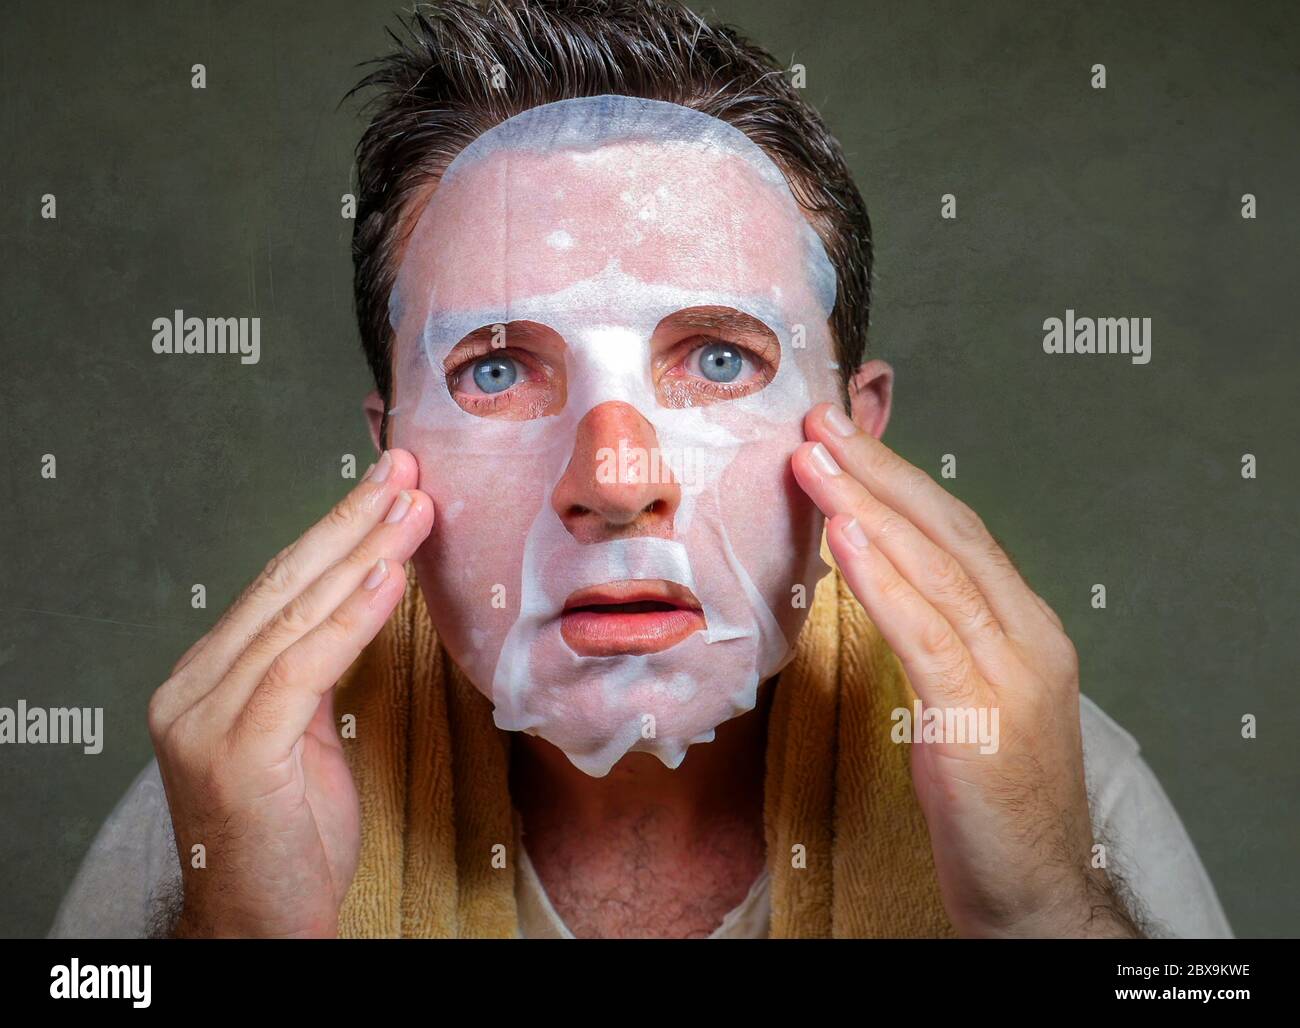 style de vie isolé portrait de fond de jeune étrange et drôle homme à la maison essayant d'utiliser le papier de beauté masque facial de nettoyage d'apprentissage anti vieillissement traitm Banque D'Images